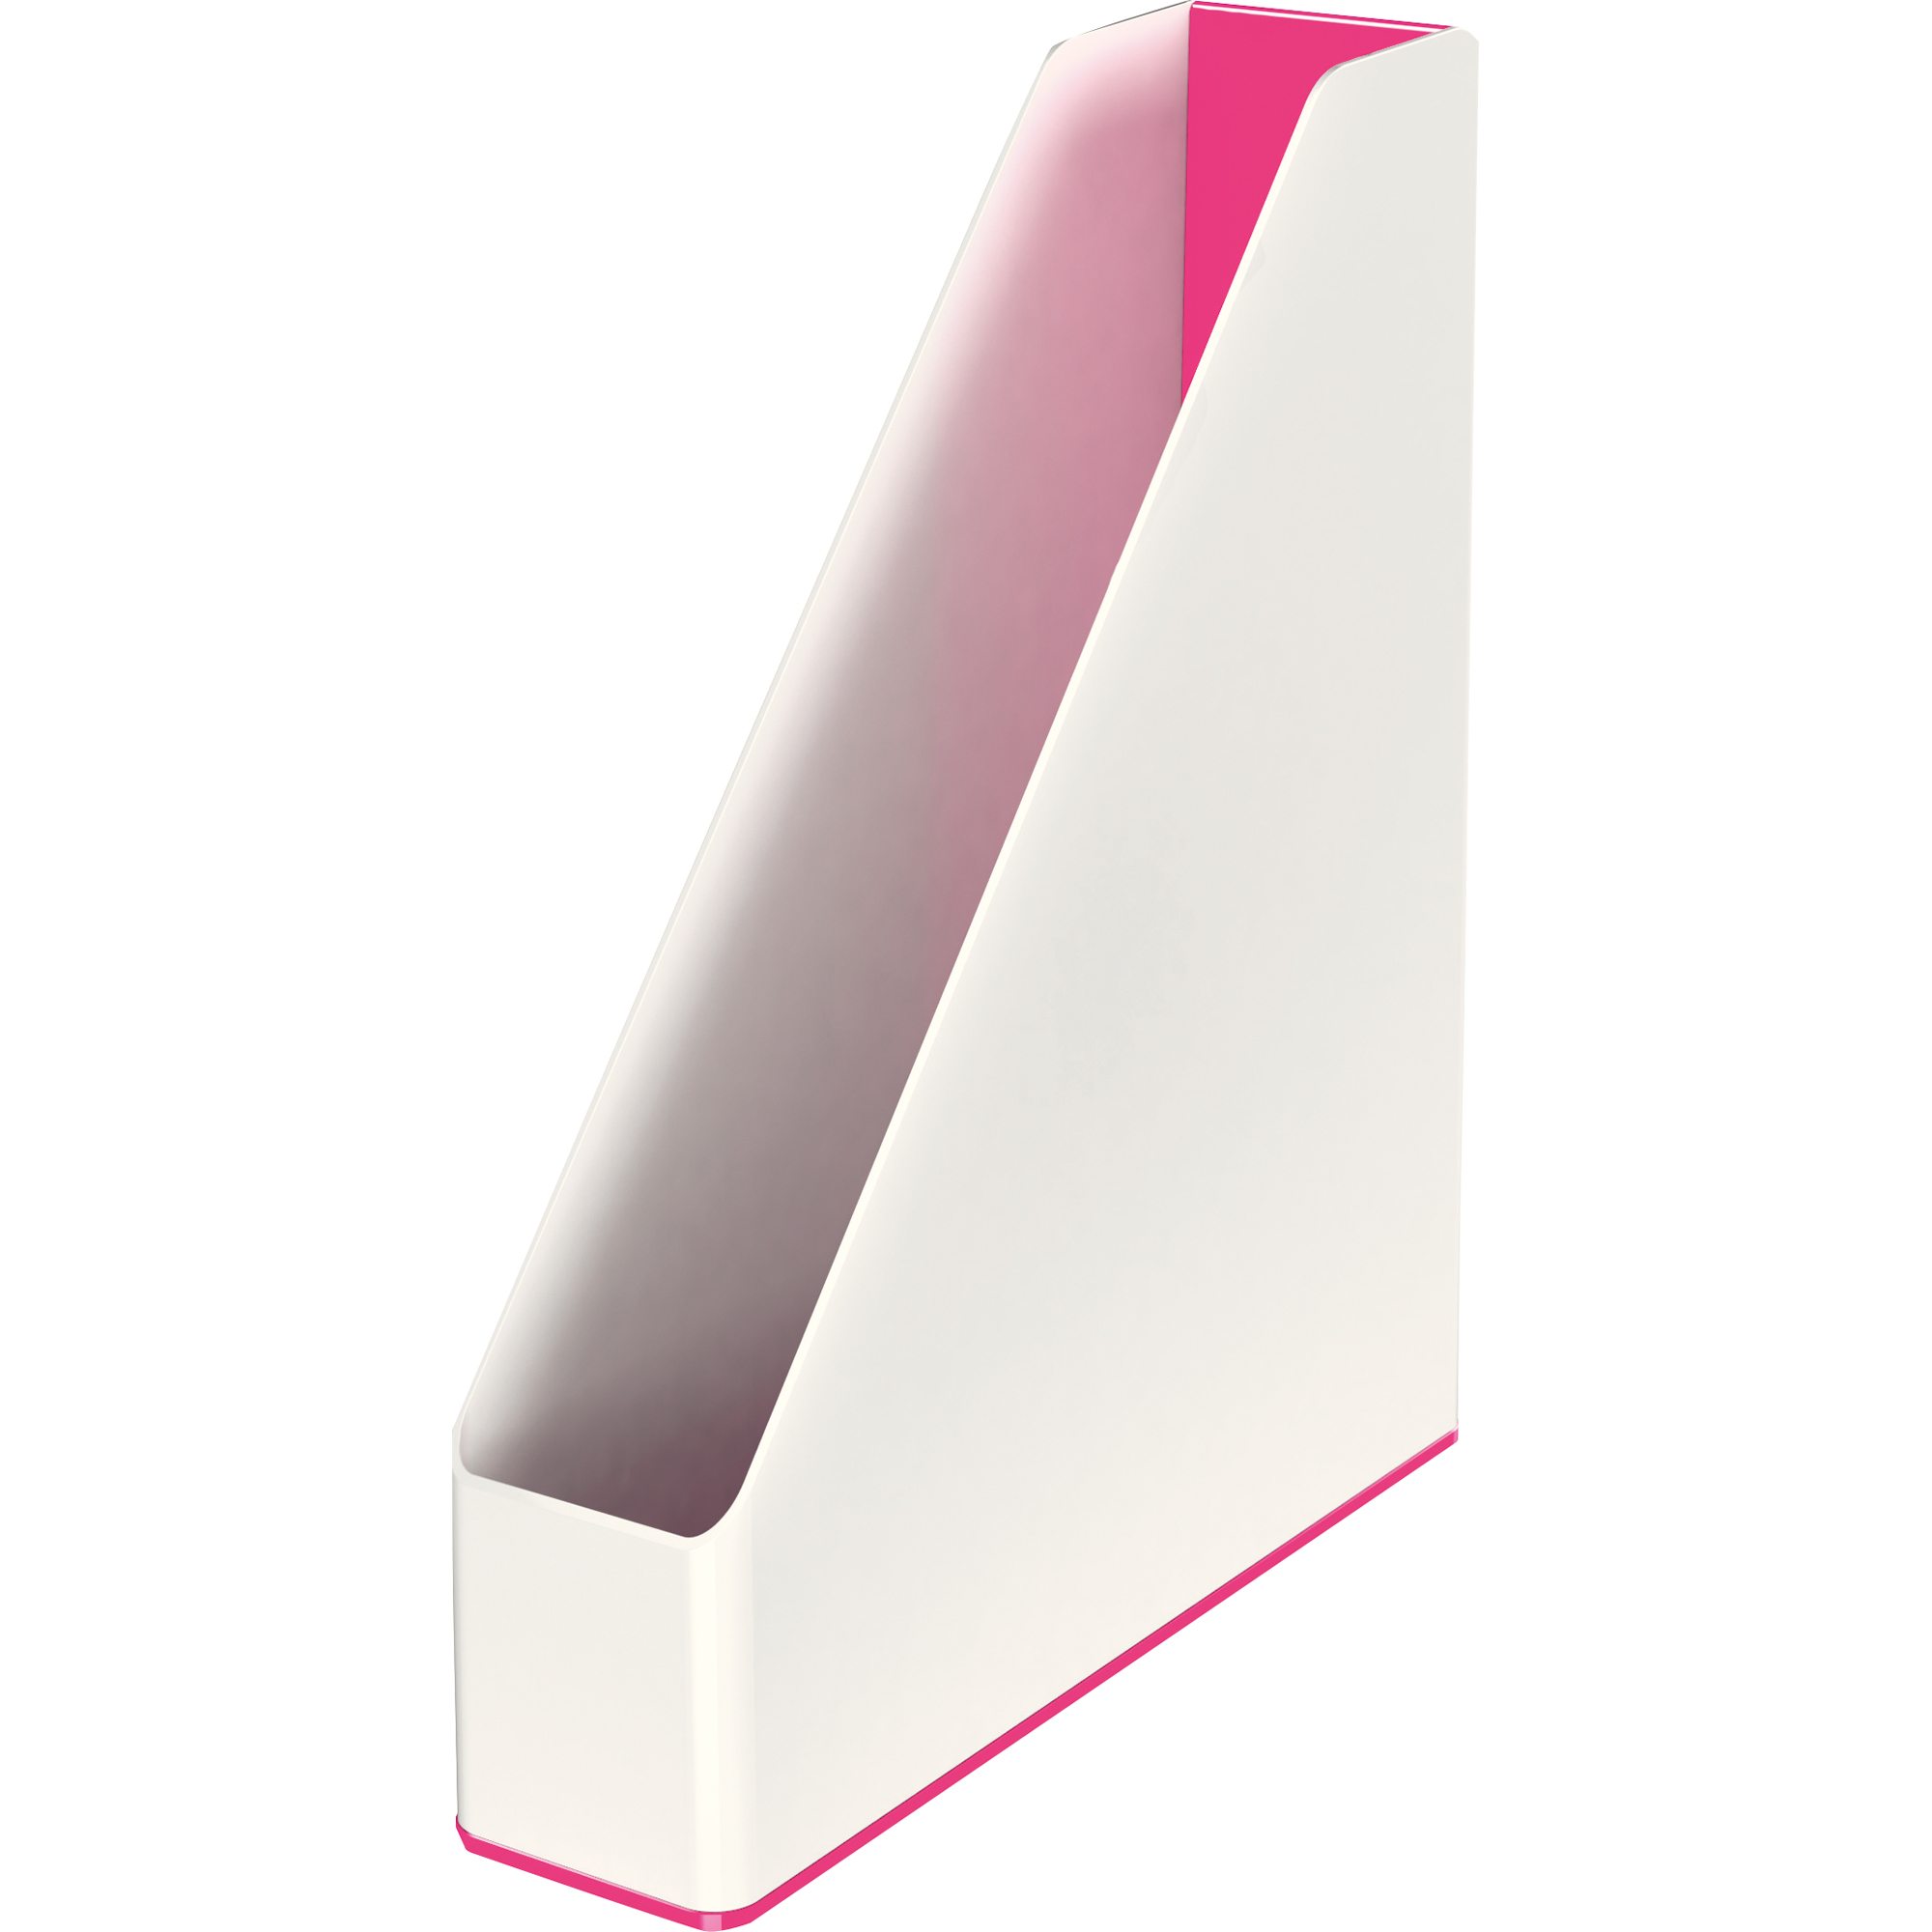 Leitz Stehsammler WOW Duo Color für DIN A4 pink metallic, weiß